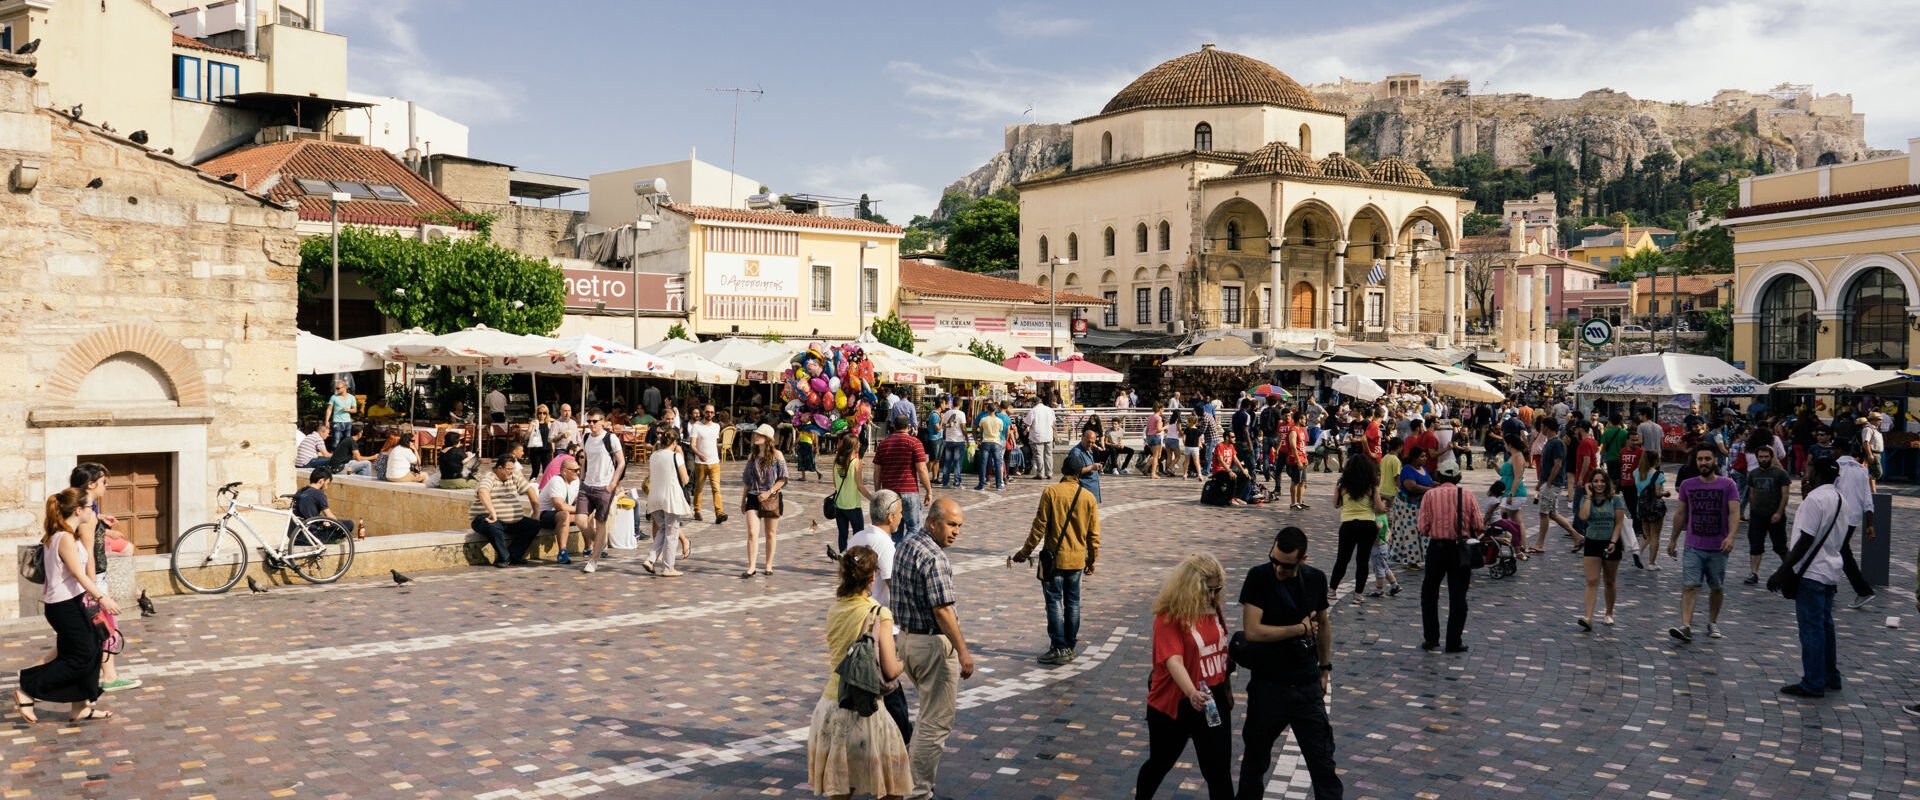 Monastiraki square